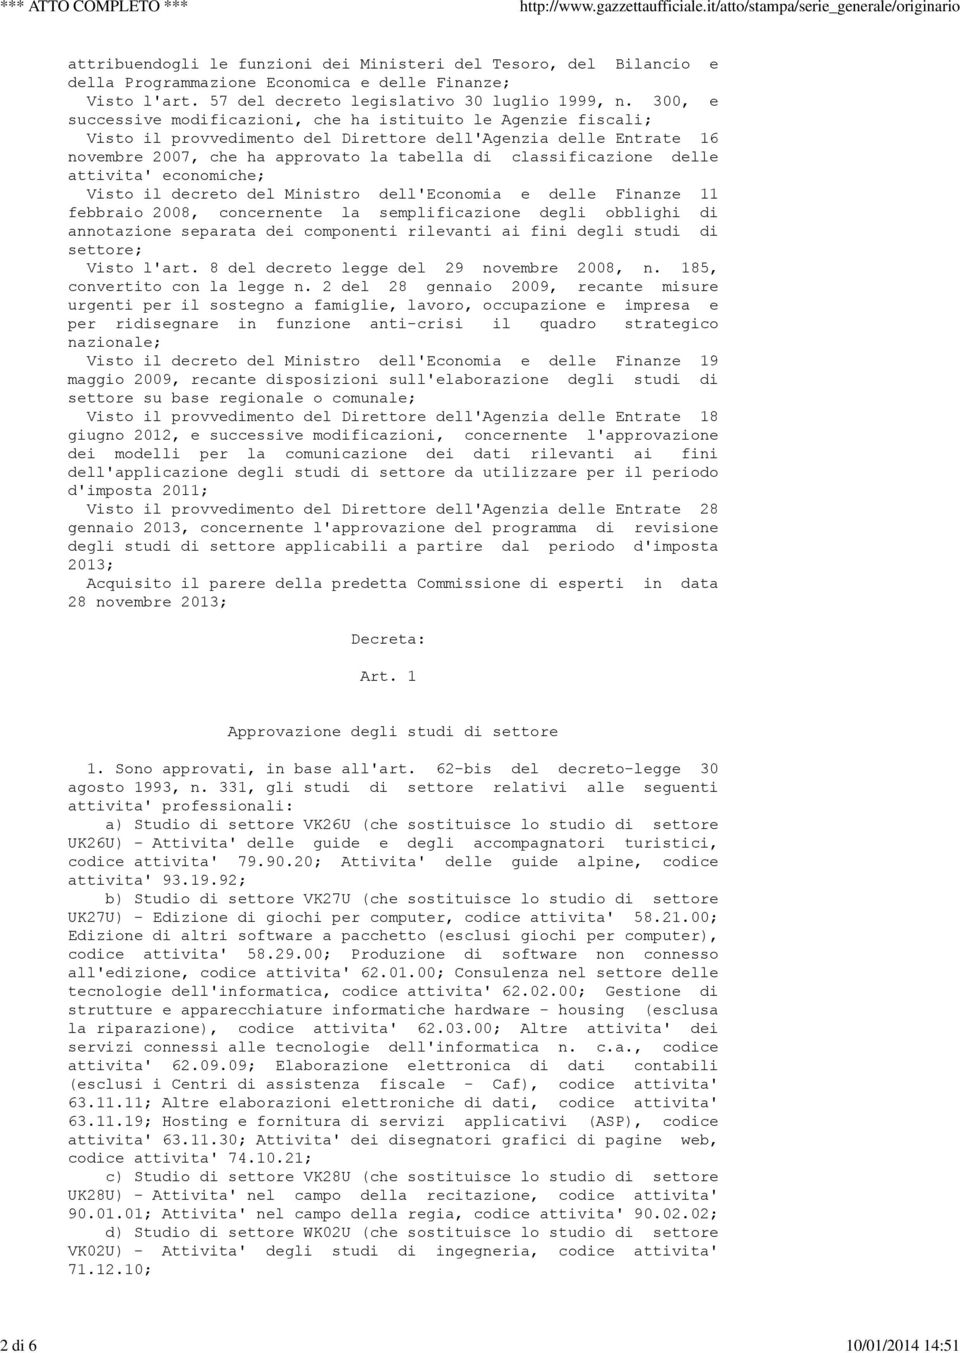 delle attivita' economiche; Visto il decreto del Ministro dell'economia e delle Finanze 11 febbraio 2008, concernente la semplificazione degli obblighi di annotazione separata dei componenti